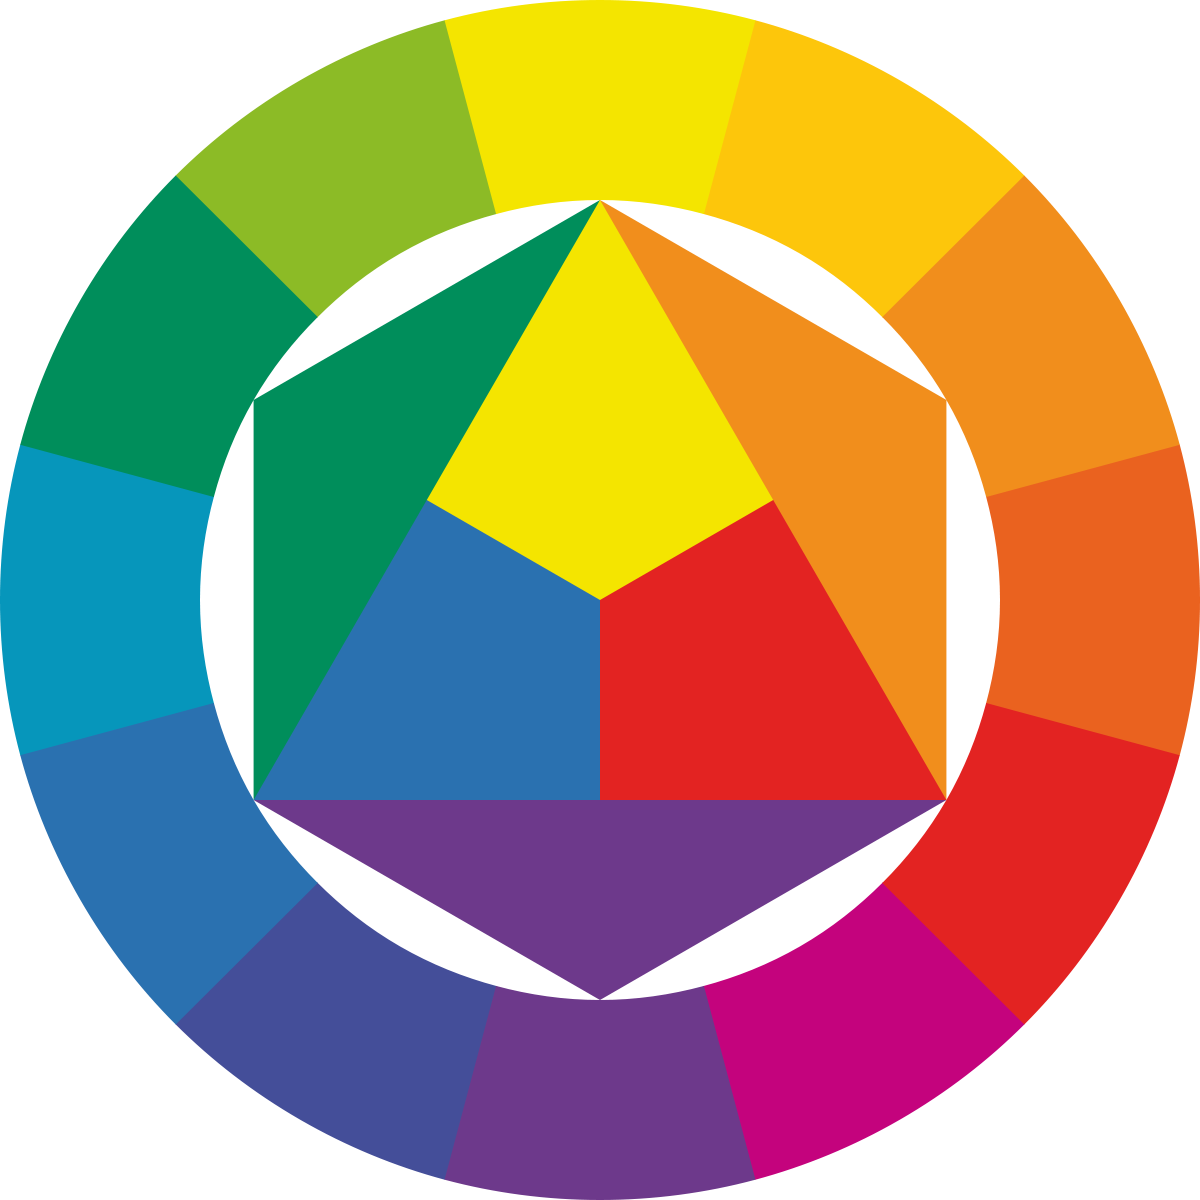 Цветогамма. Йоханнес Иттен цветовой крцг. Цветовой круг Иттена. Иоханнес Иттен круг цветов. Цветовой спектр круг Иттена.